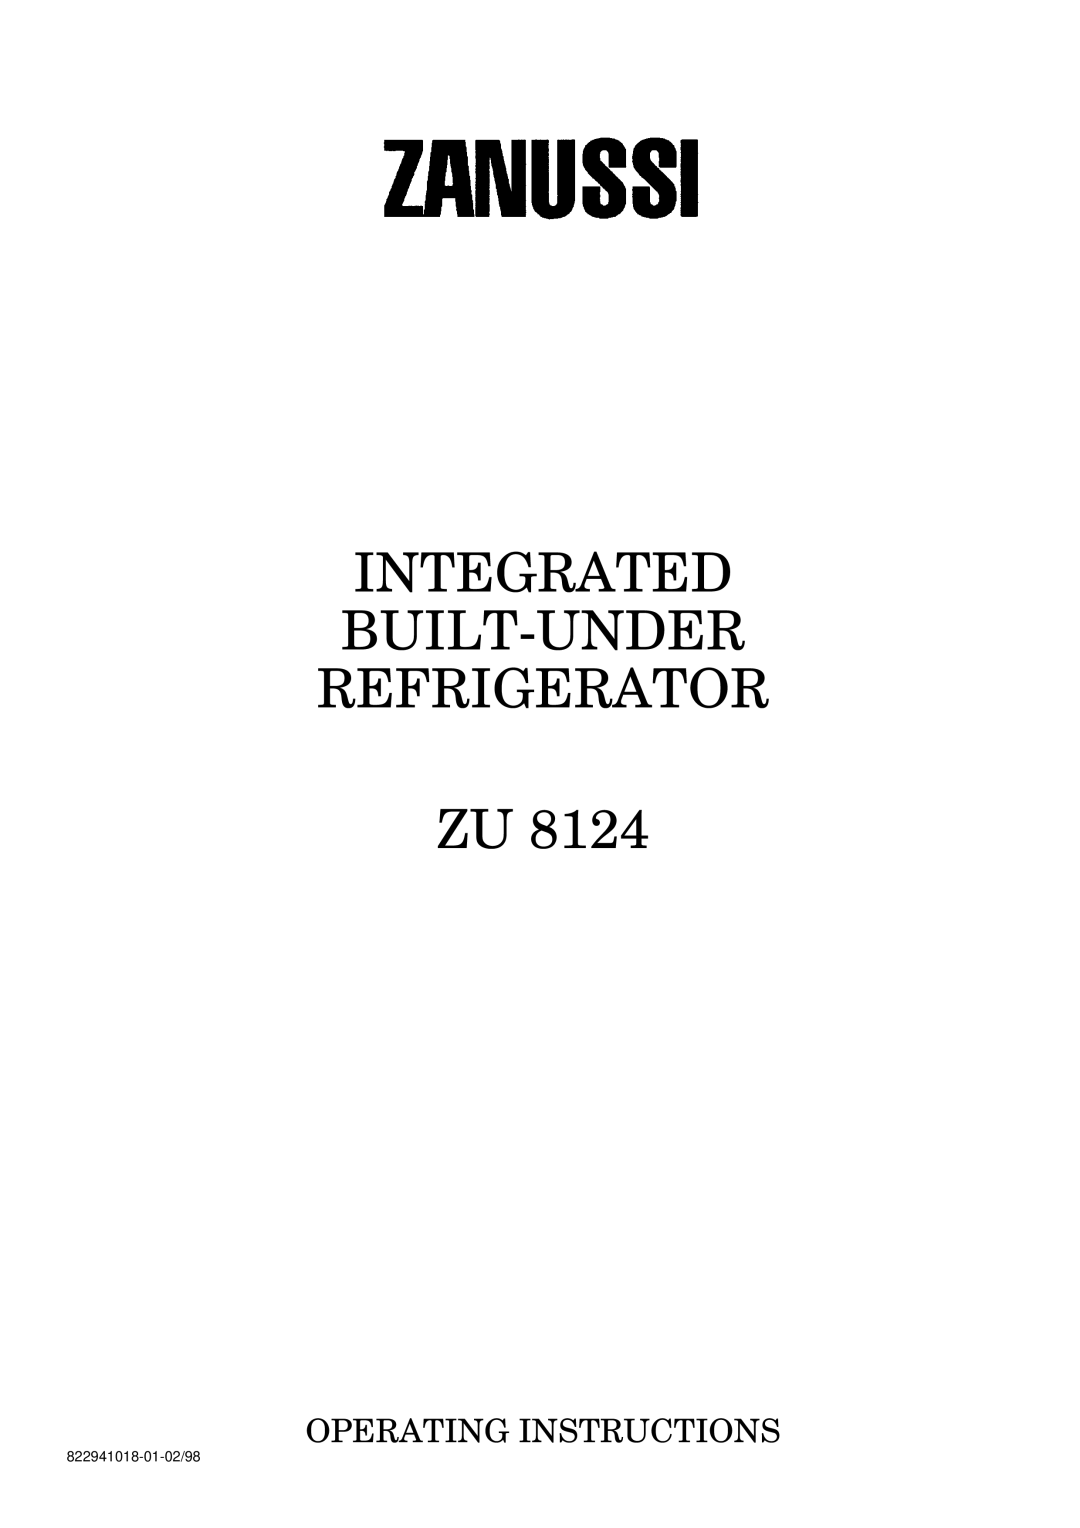 Zanussi ZU 8124 manual Integrated Built-Under Refrigerator Zu, Operating Instructions, 822941018-01-02/98 